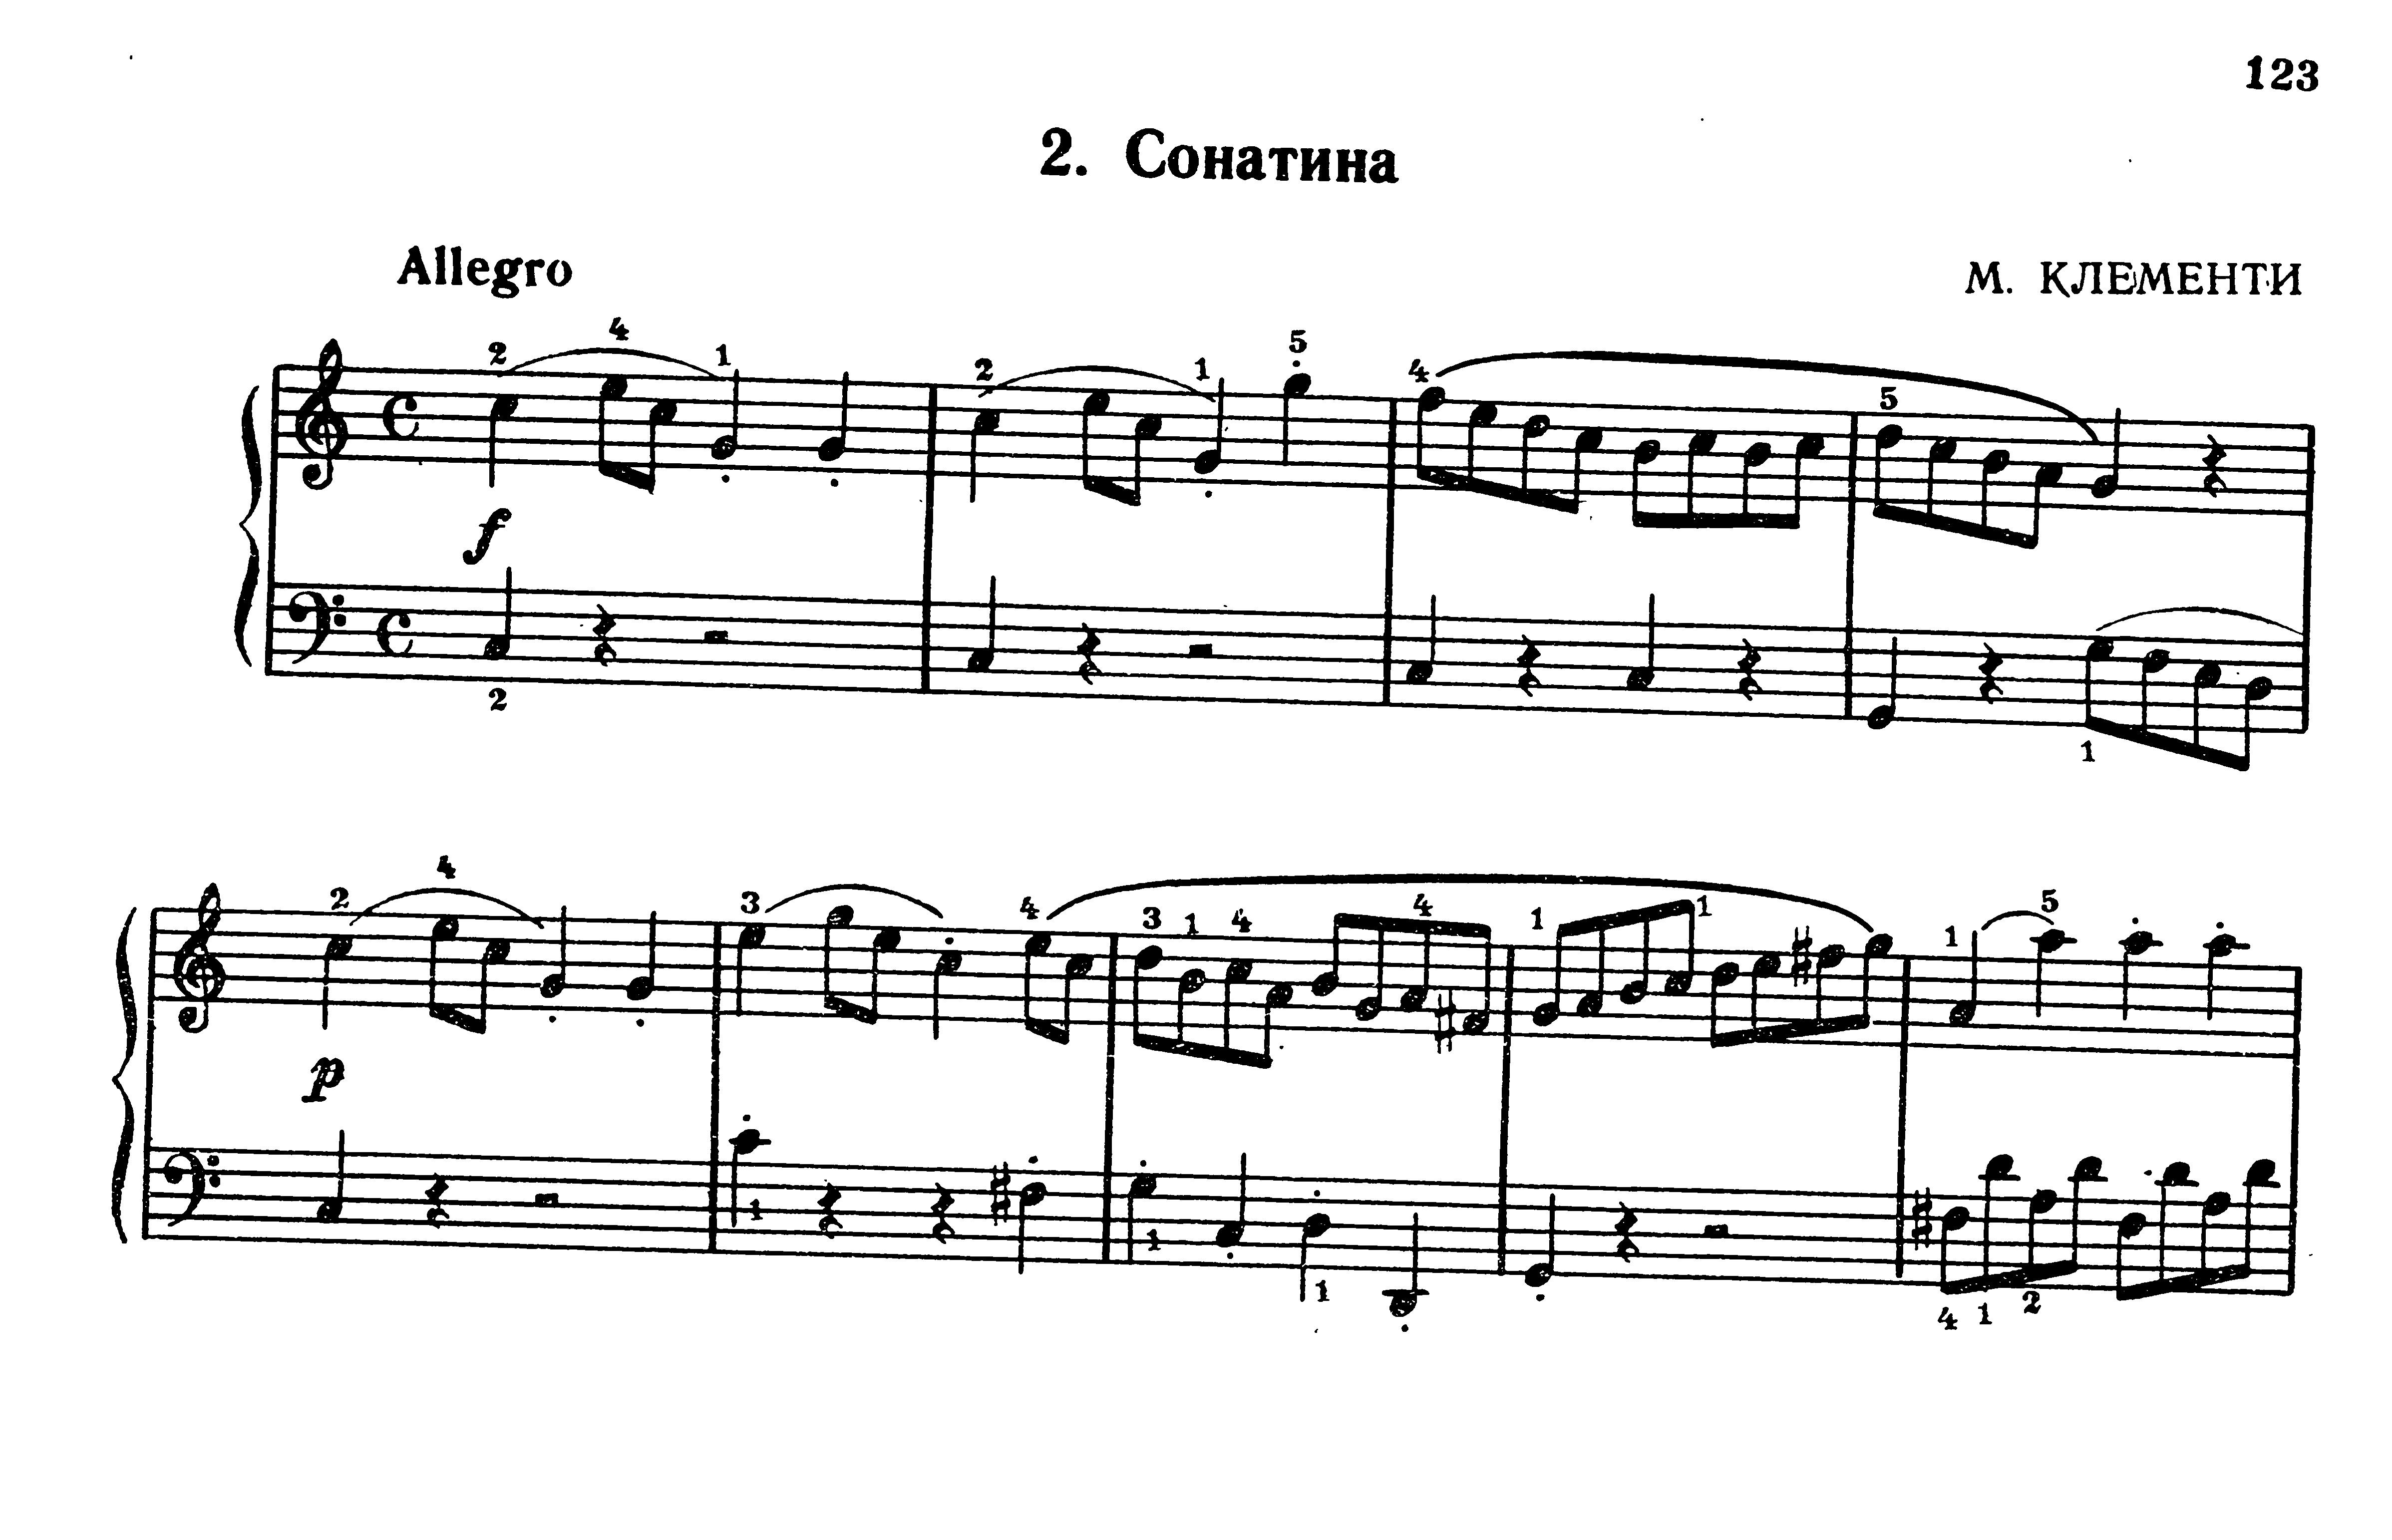 Произведения крупной формы для фортепиано из сборника "Фортепианная игра" (2 часть)